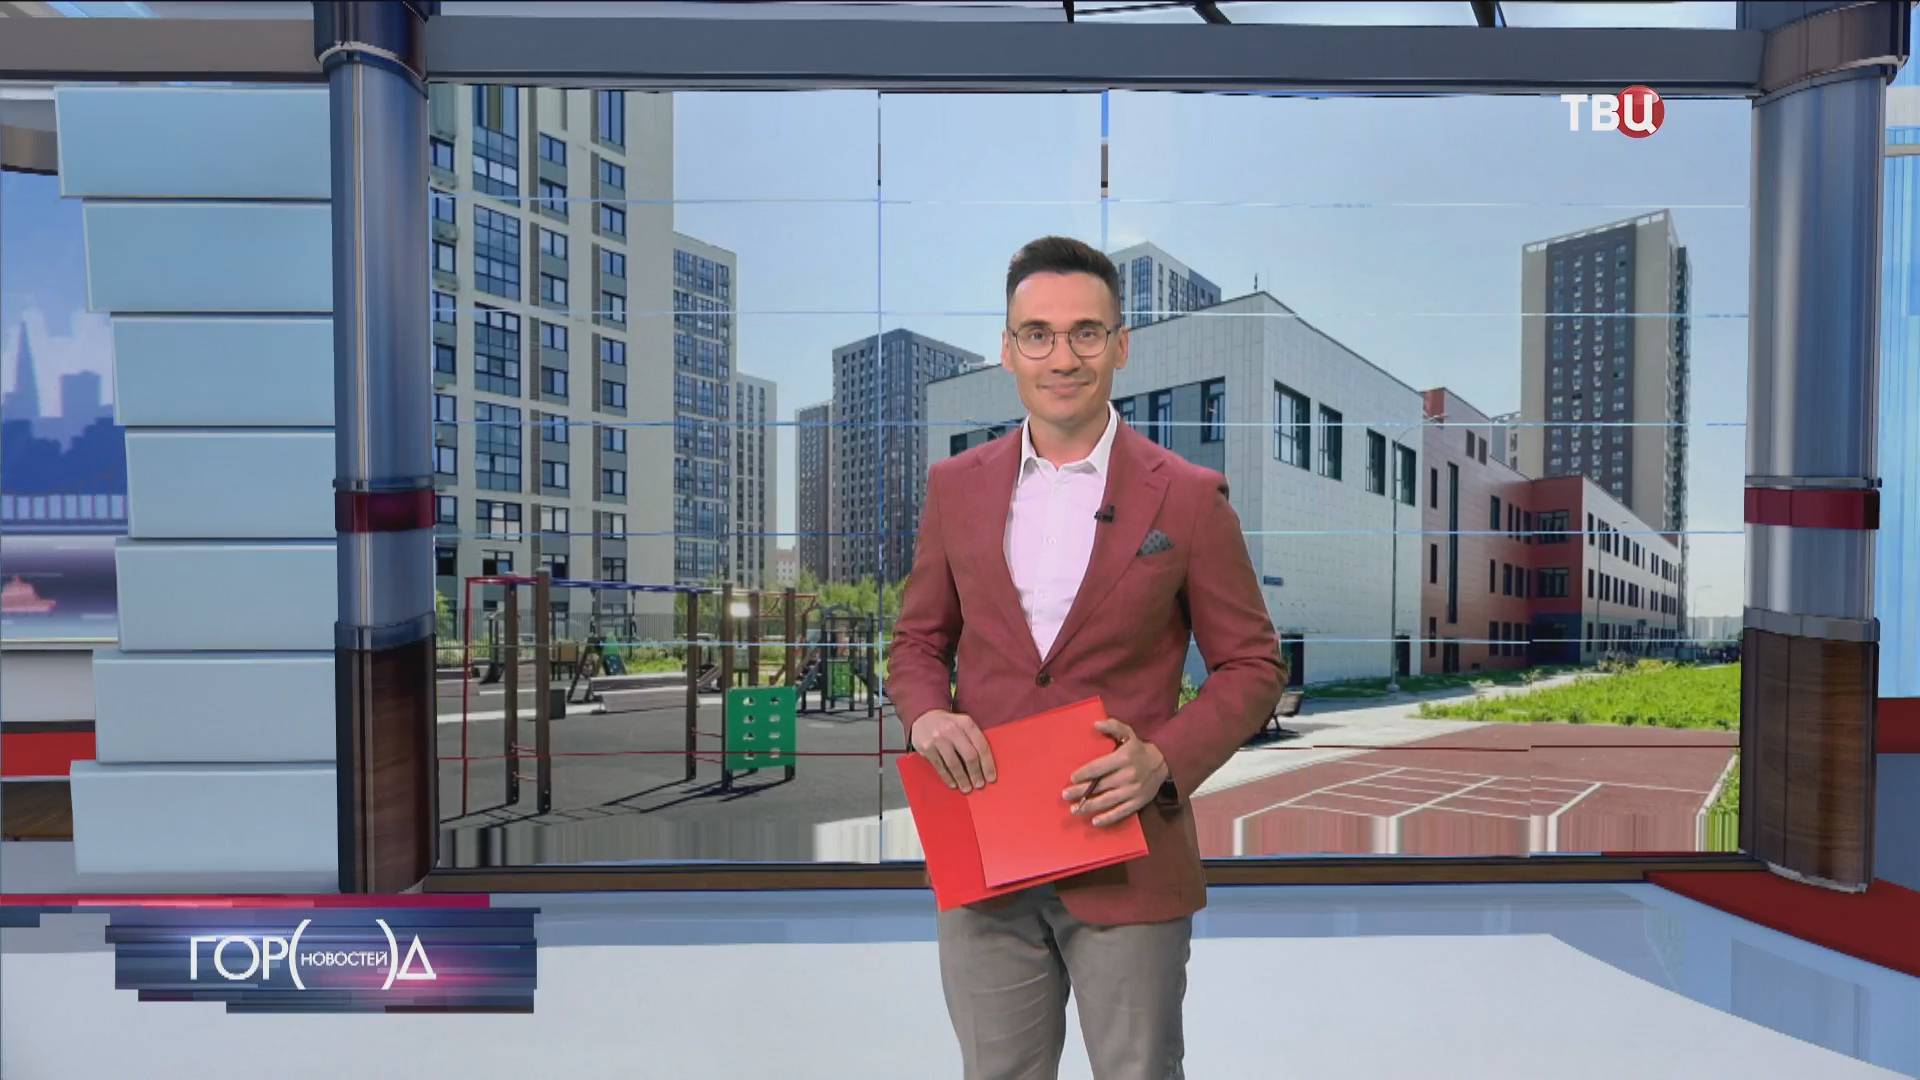 Собянин: Новый учебный корпус в Чертанове Южном откроется в сентябре / Город новостей на ТВЦ